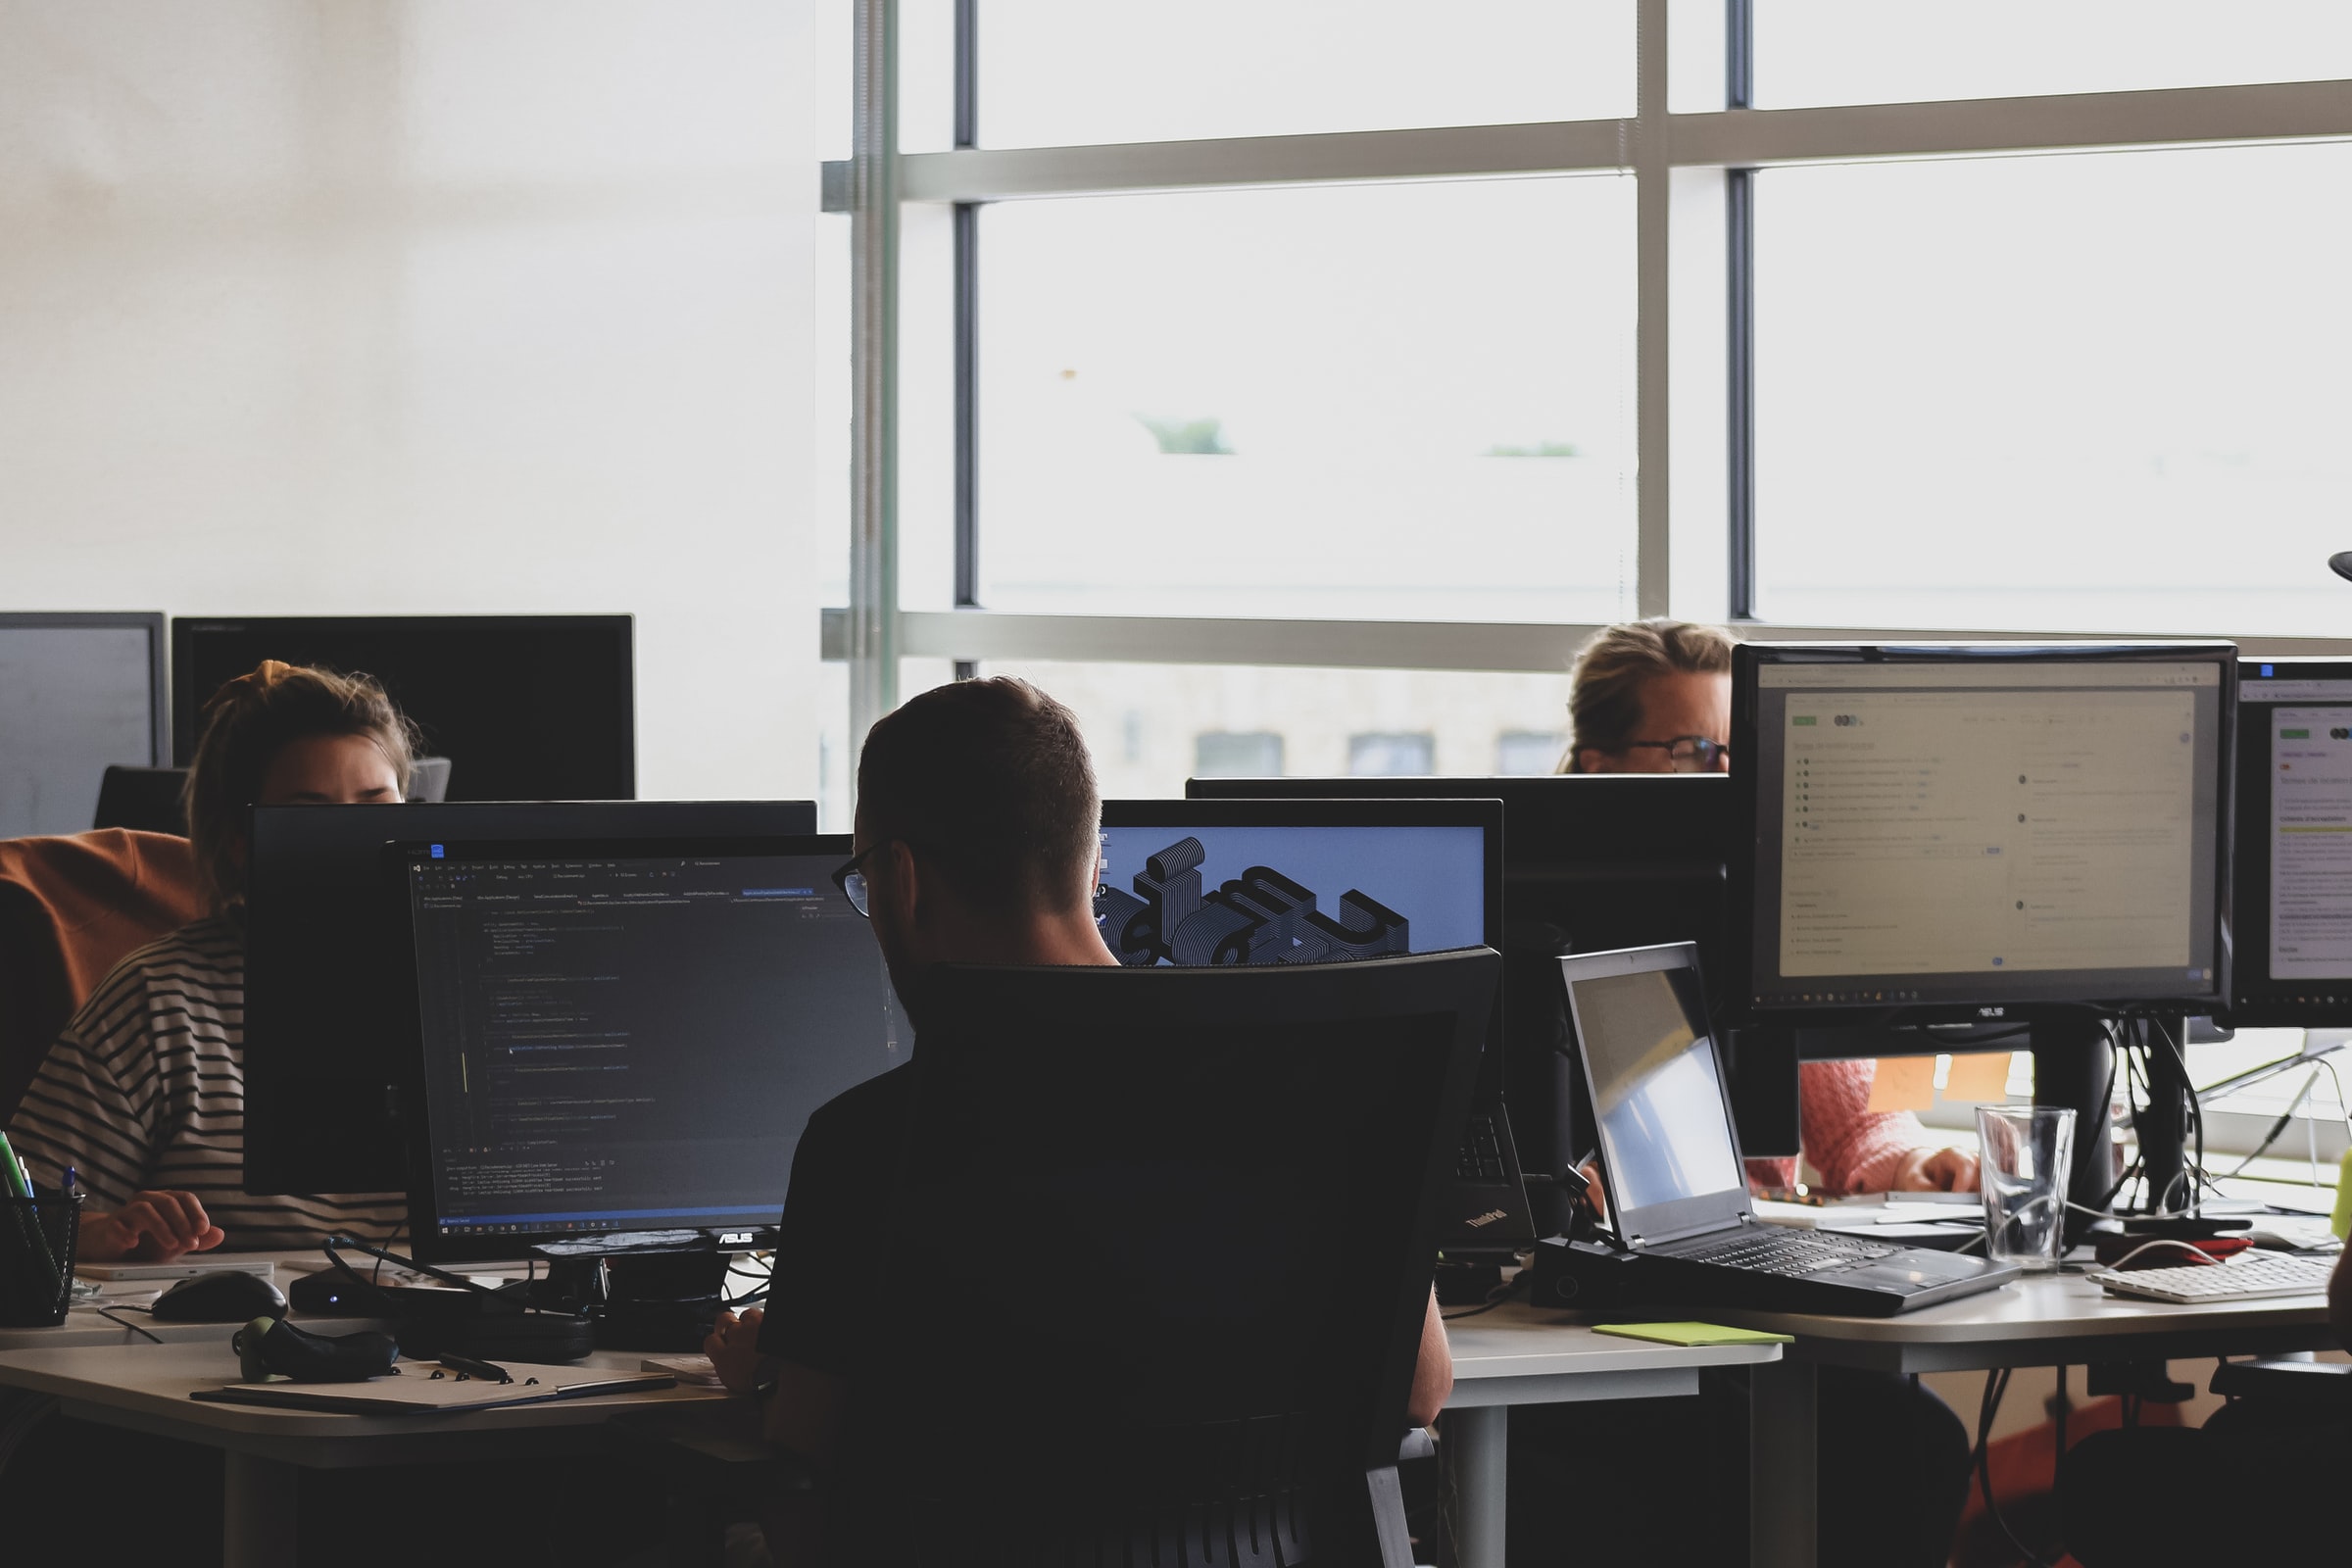 Vemos algumas pessoas em um escritório com vários computadores; todas estão concentradas (imagem ilustrativa).